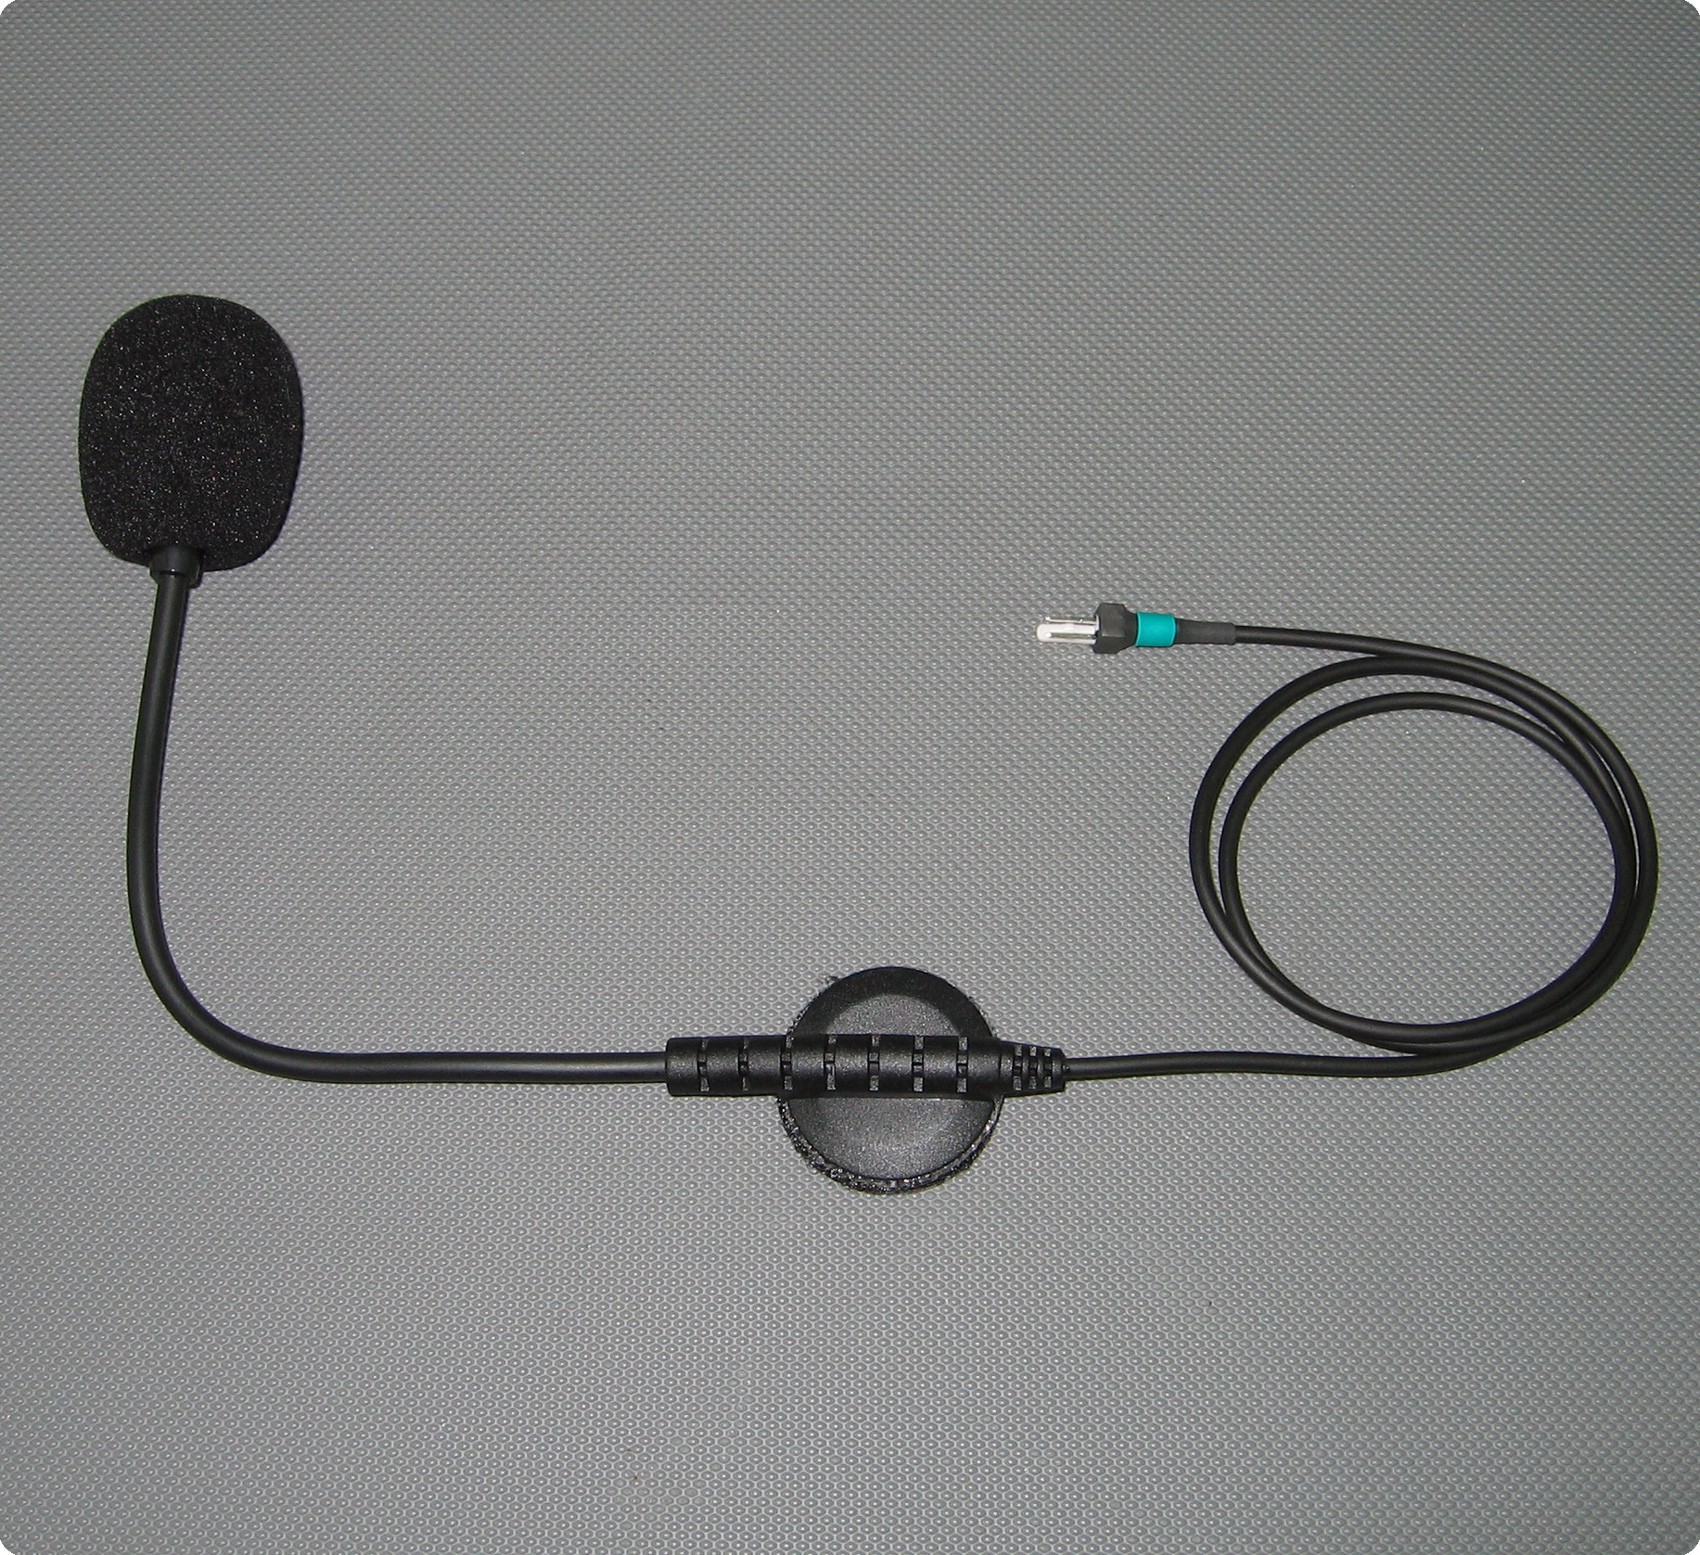 Micrófono para Sparco cuello de cisne IS-110 Kit de montaje en casco compatible